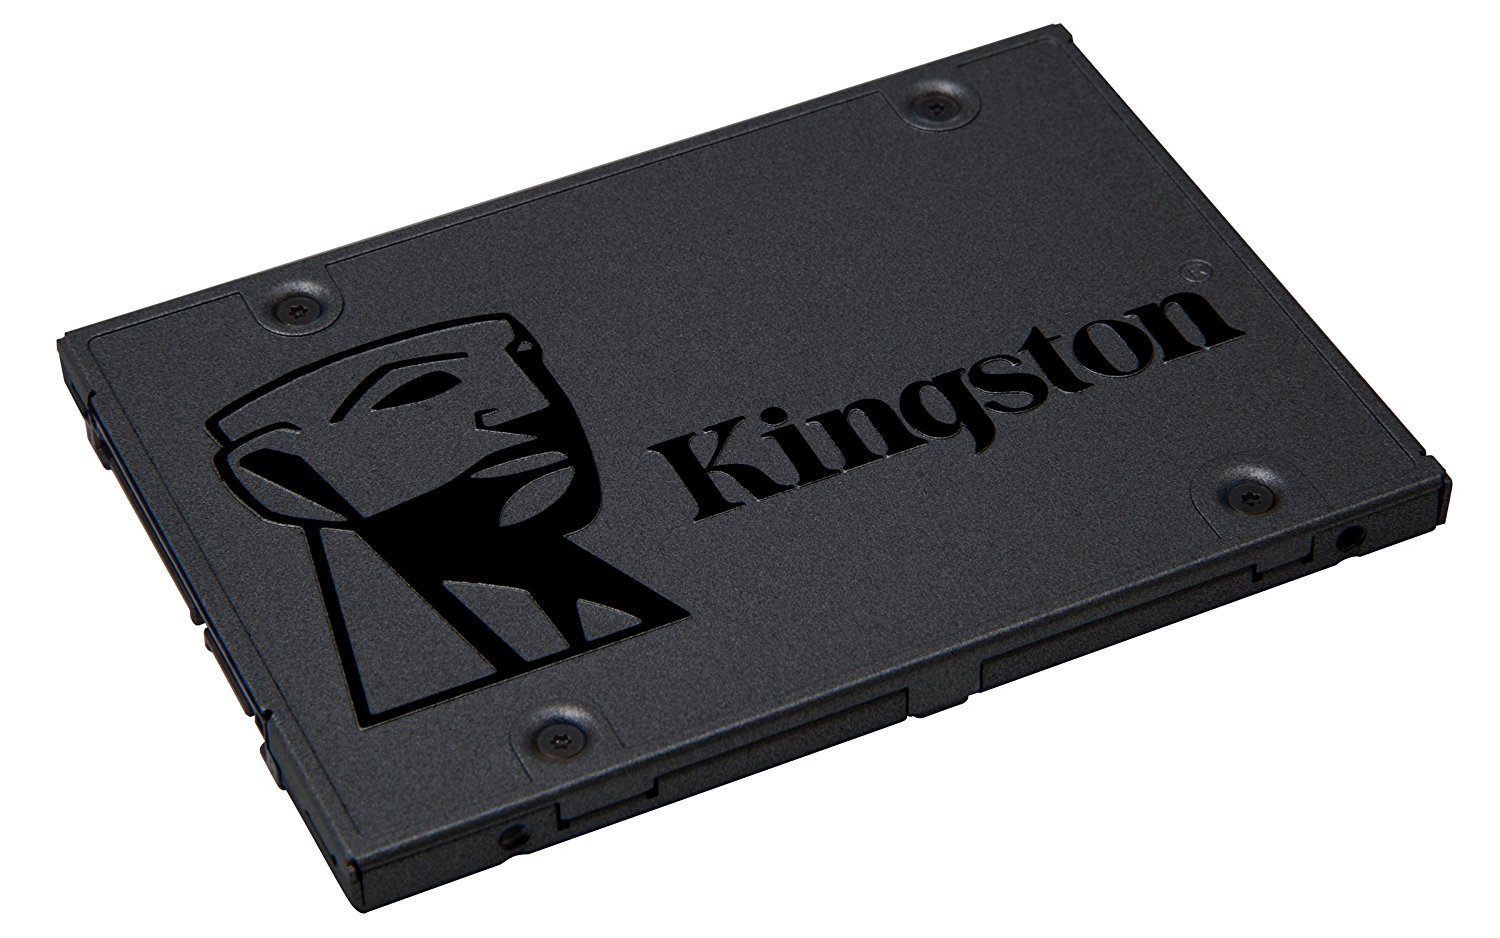 Kingston - SSD Kingston A400 240GB SATA III (500/350MB/s)